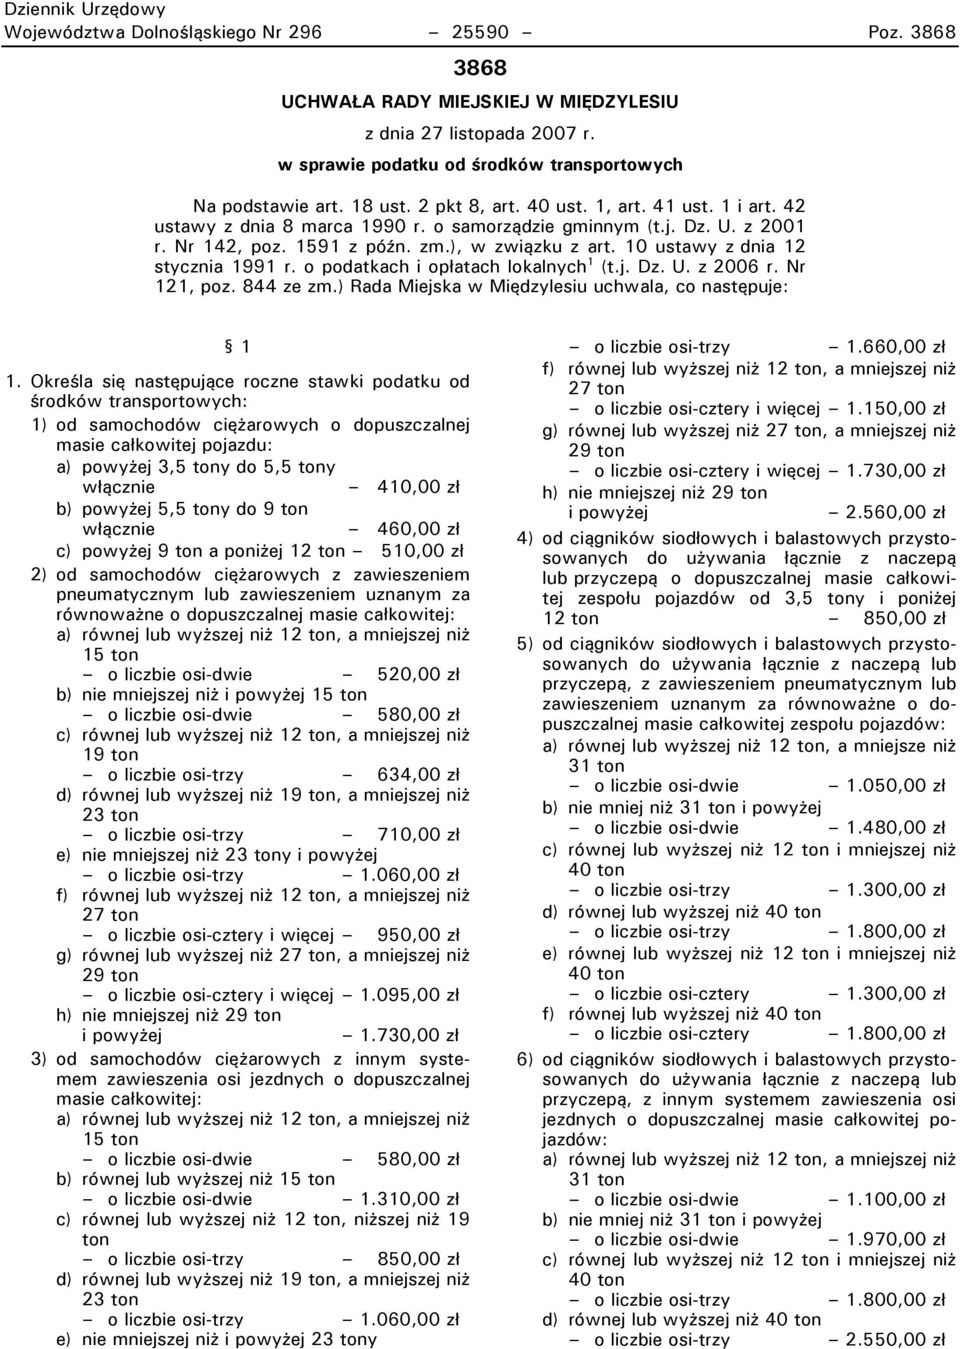 10 ustawy z dnia 12 stycznia 1991 r. o podatkach i opłatach lokalnych 1 (t.j. Dz. U. z 2006 r. Nr 121t poz. 844 ze zm.) Rada Miejska w Międzylesiu uchwalat co następuje: 1.